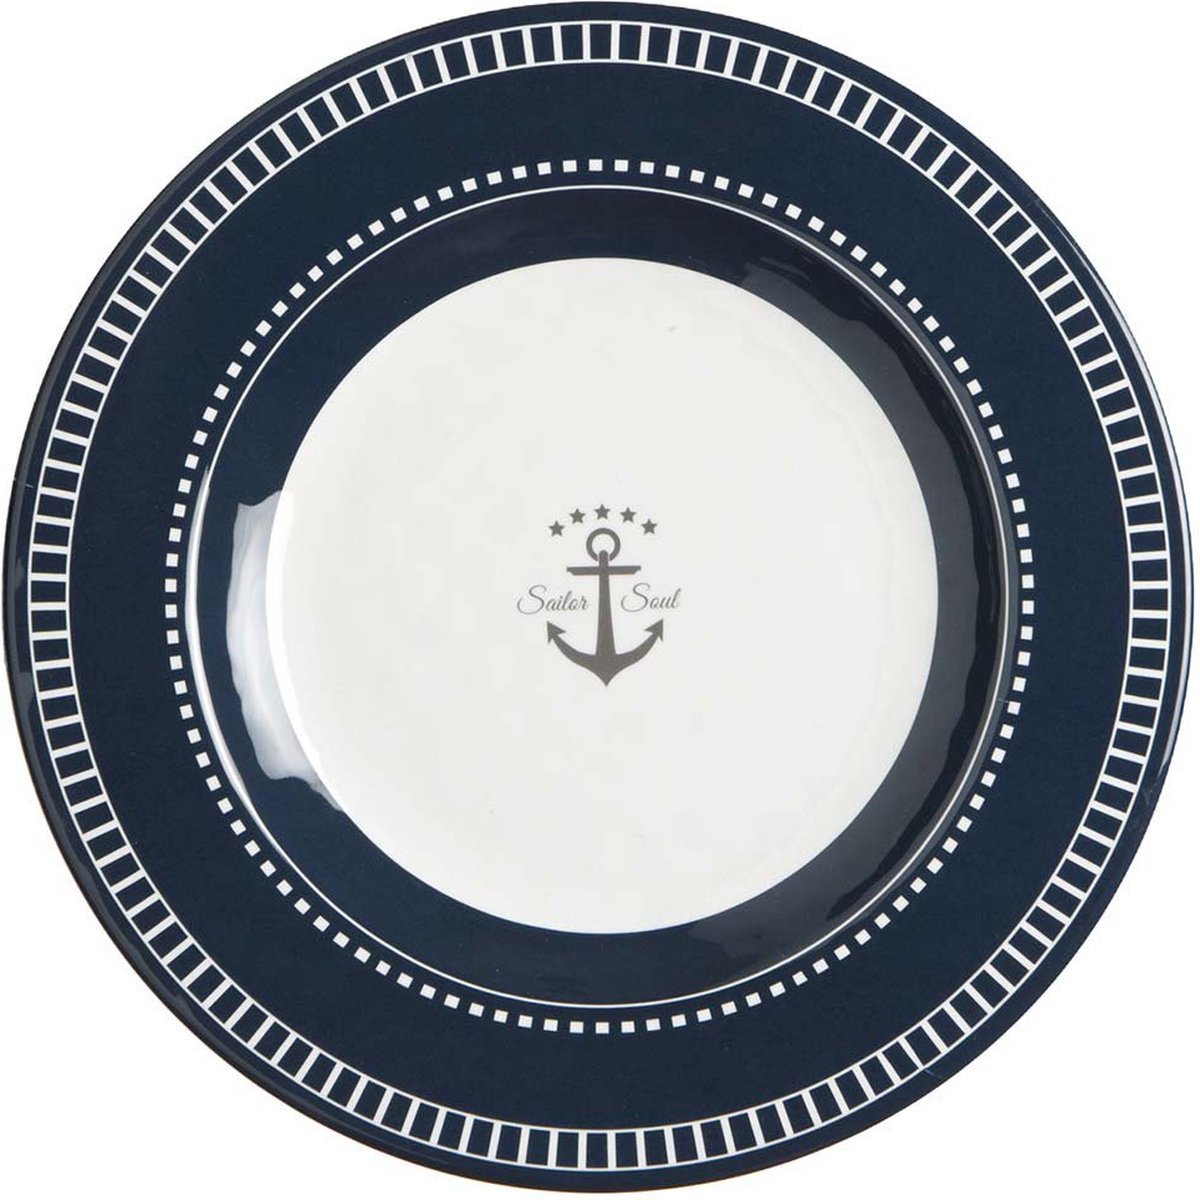 Marine Business Scheepsservies Sailor Ontbijtborden set 6 stuks